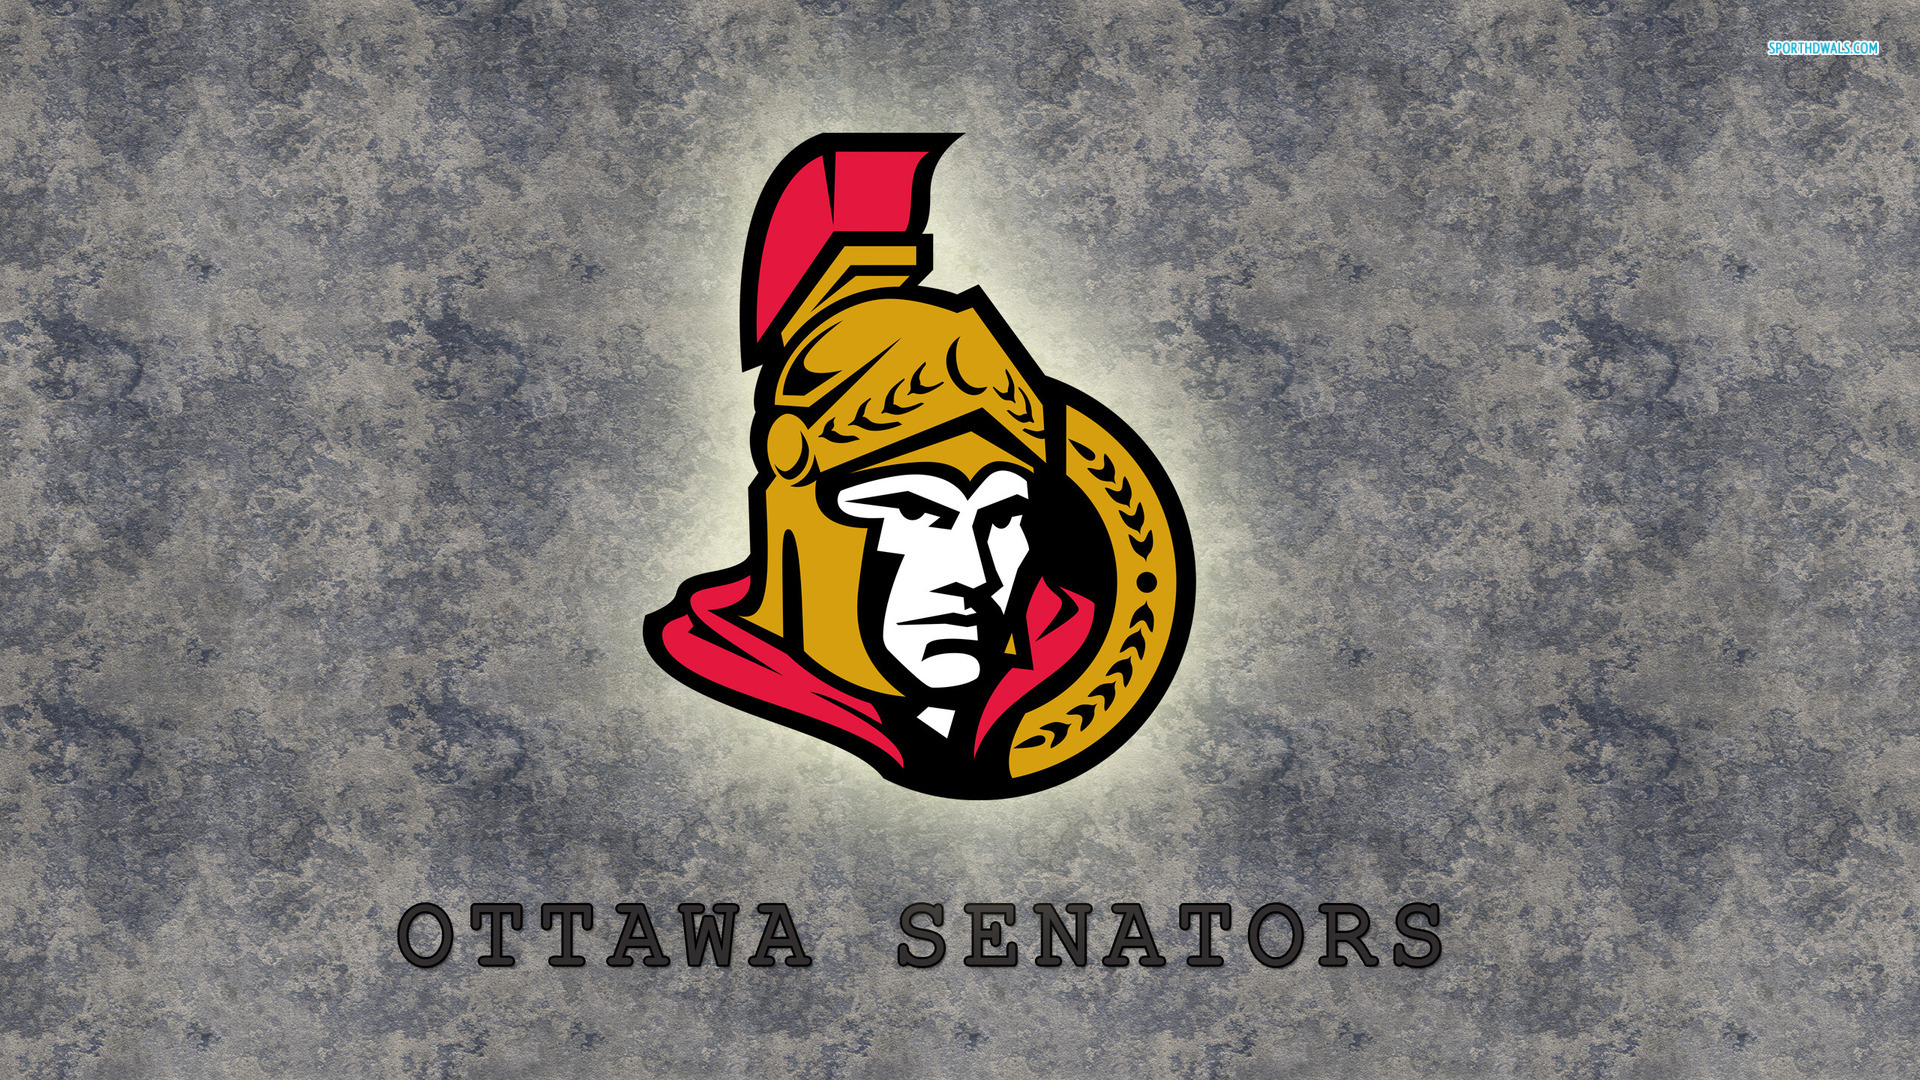 Ottawa Senators Nhl Team Wallpaper